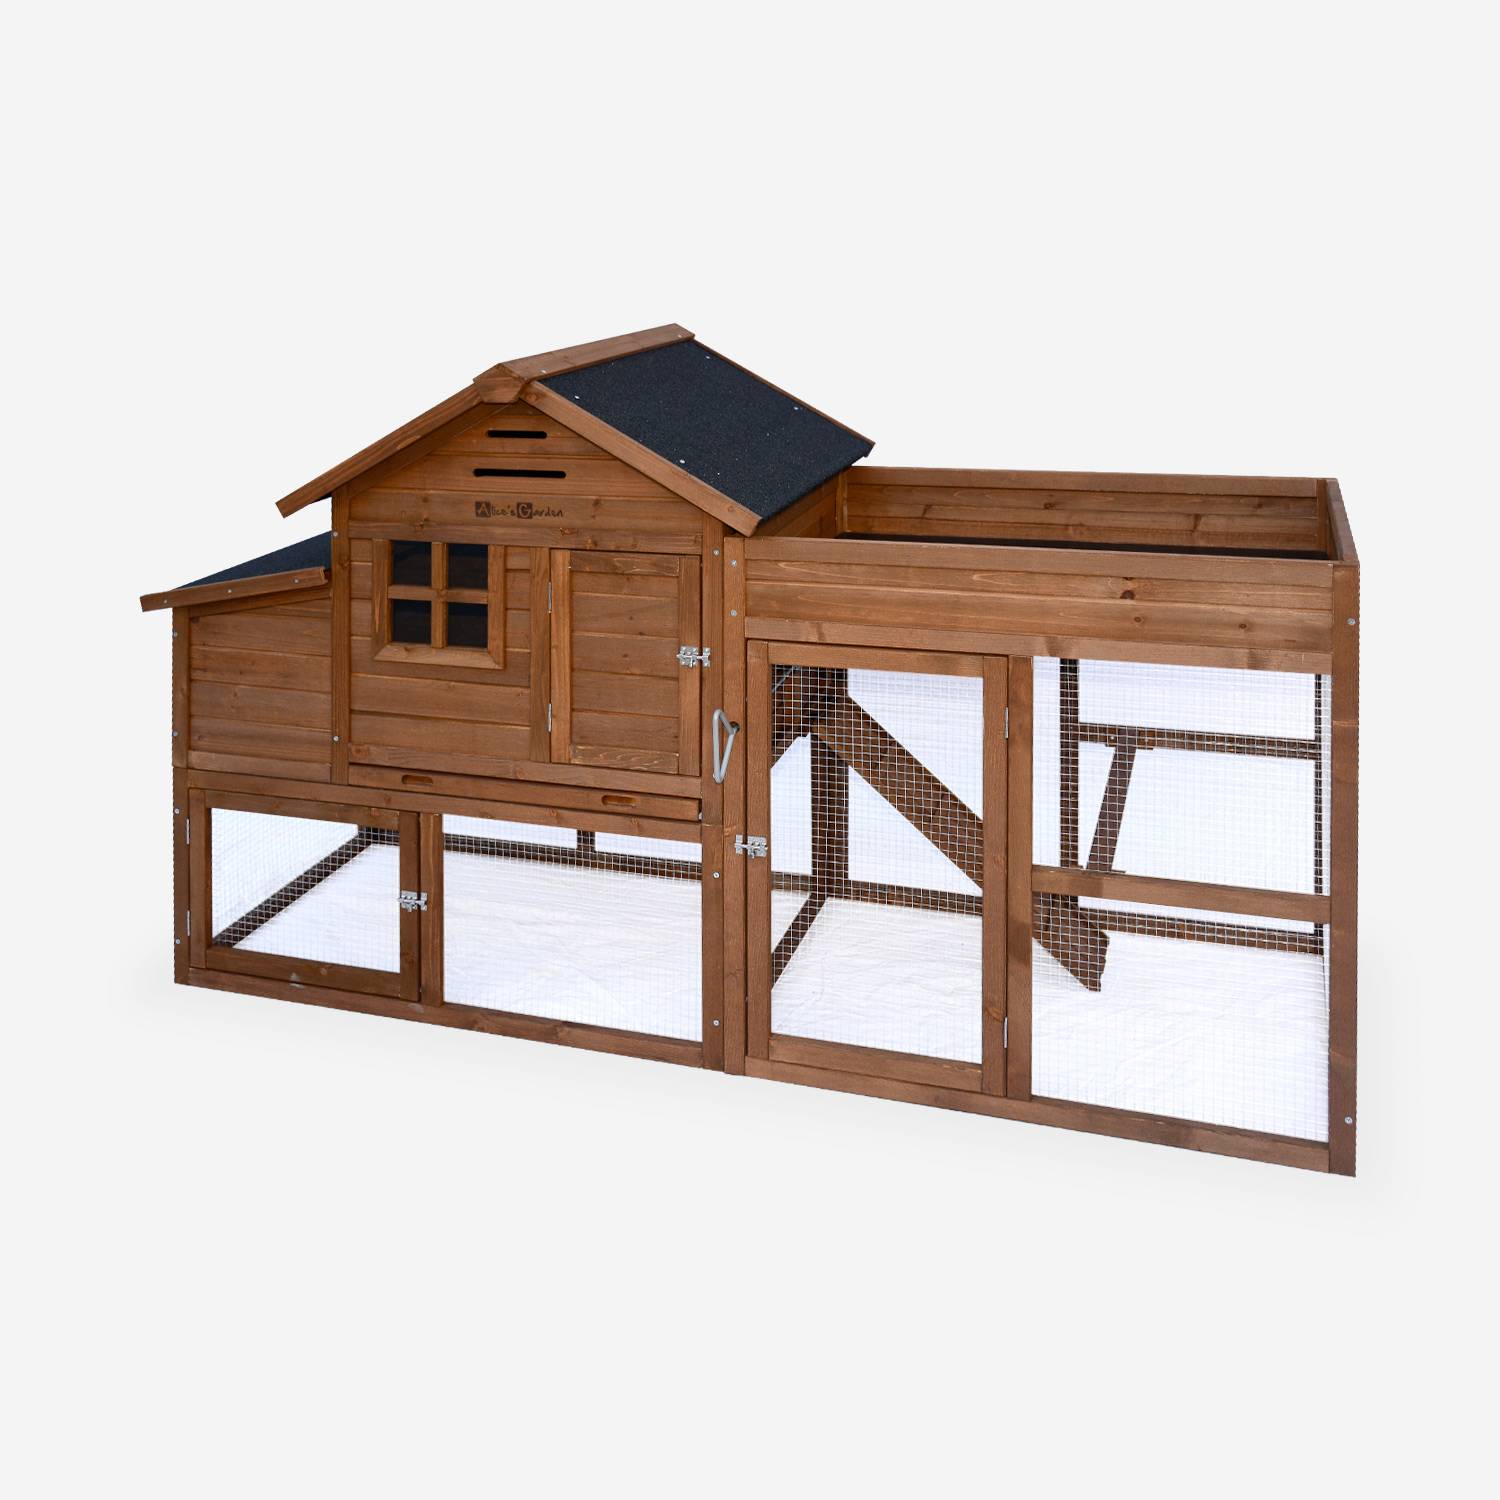 Gallinero de madera con huerto CAMPINO, 3 gallinas, caseta para gallinas con recinto Photo1